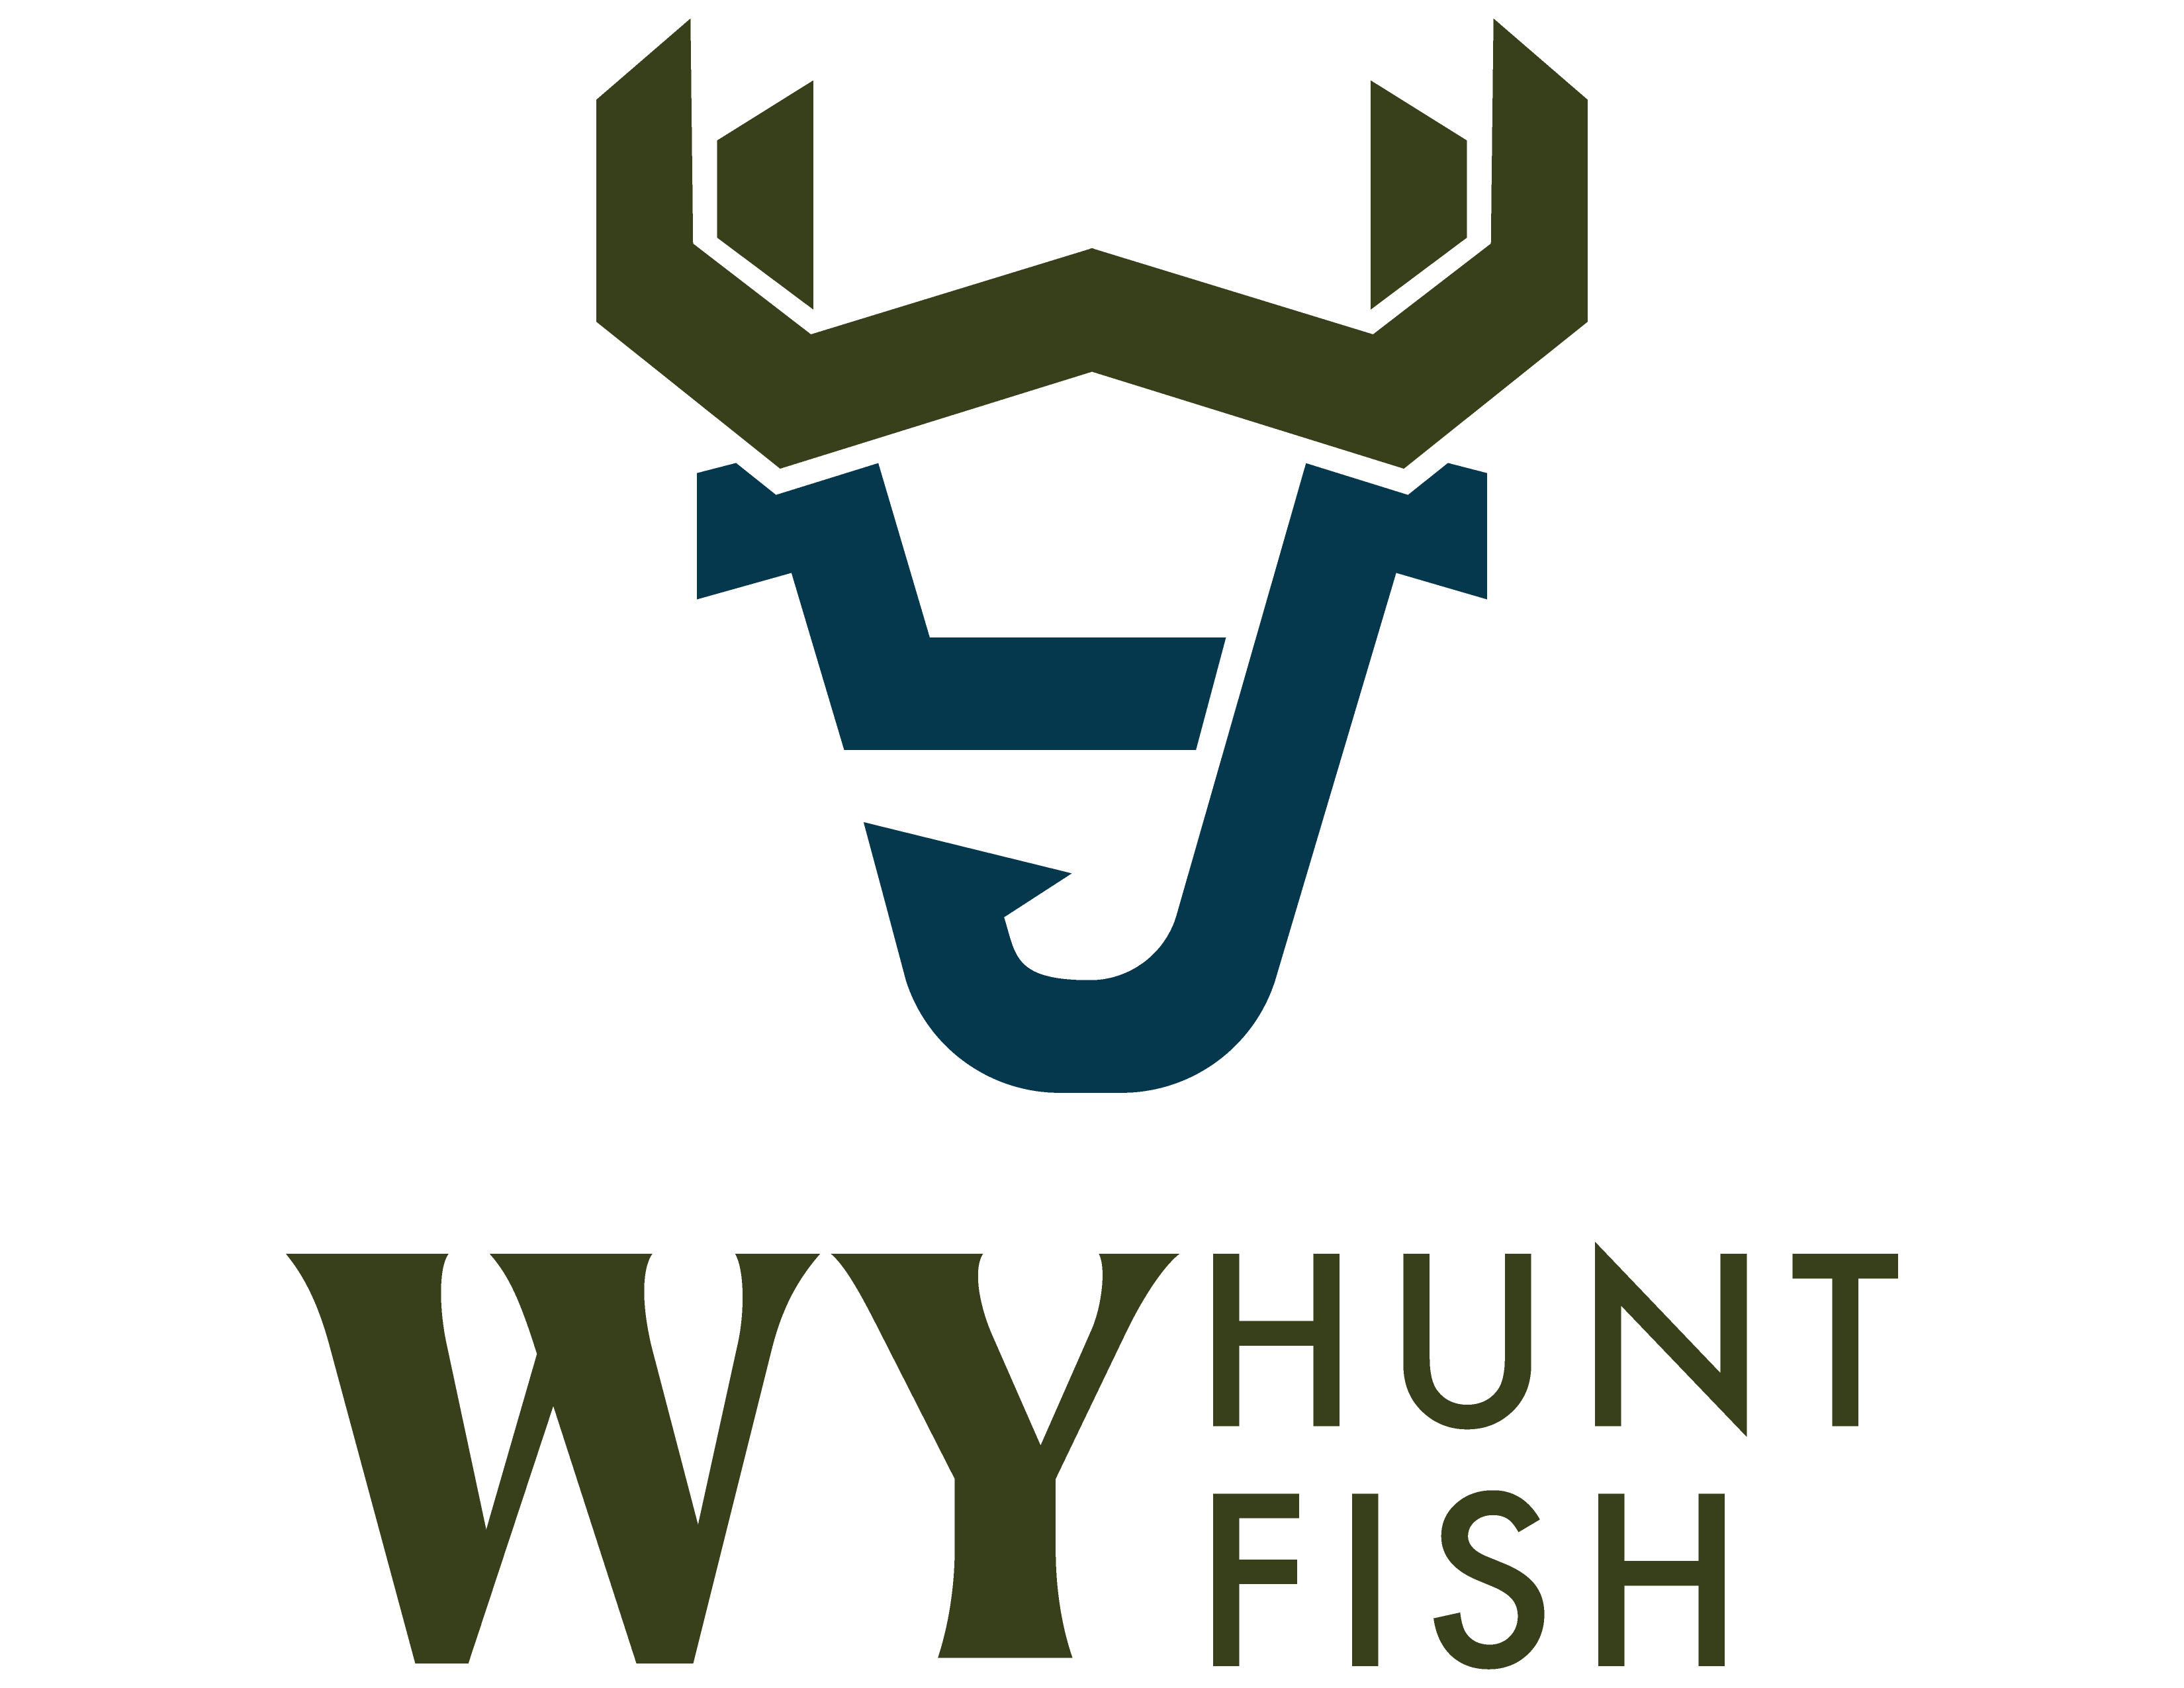 WY hunt fish logo